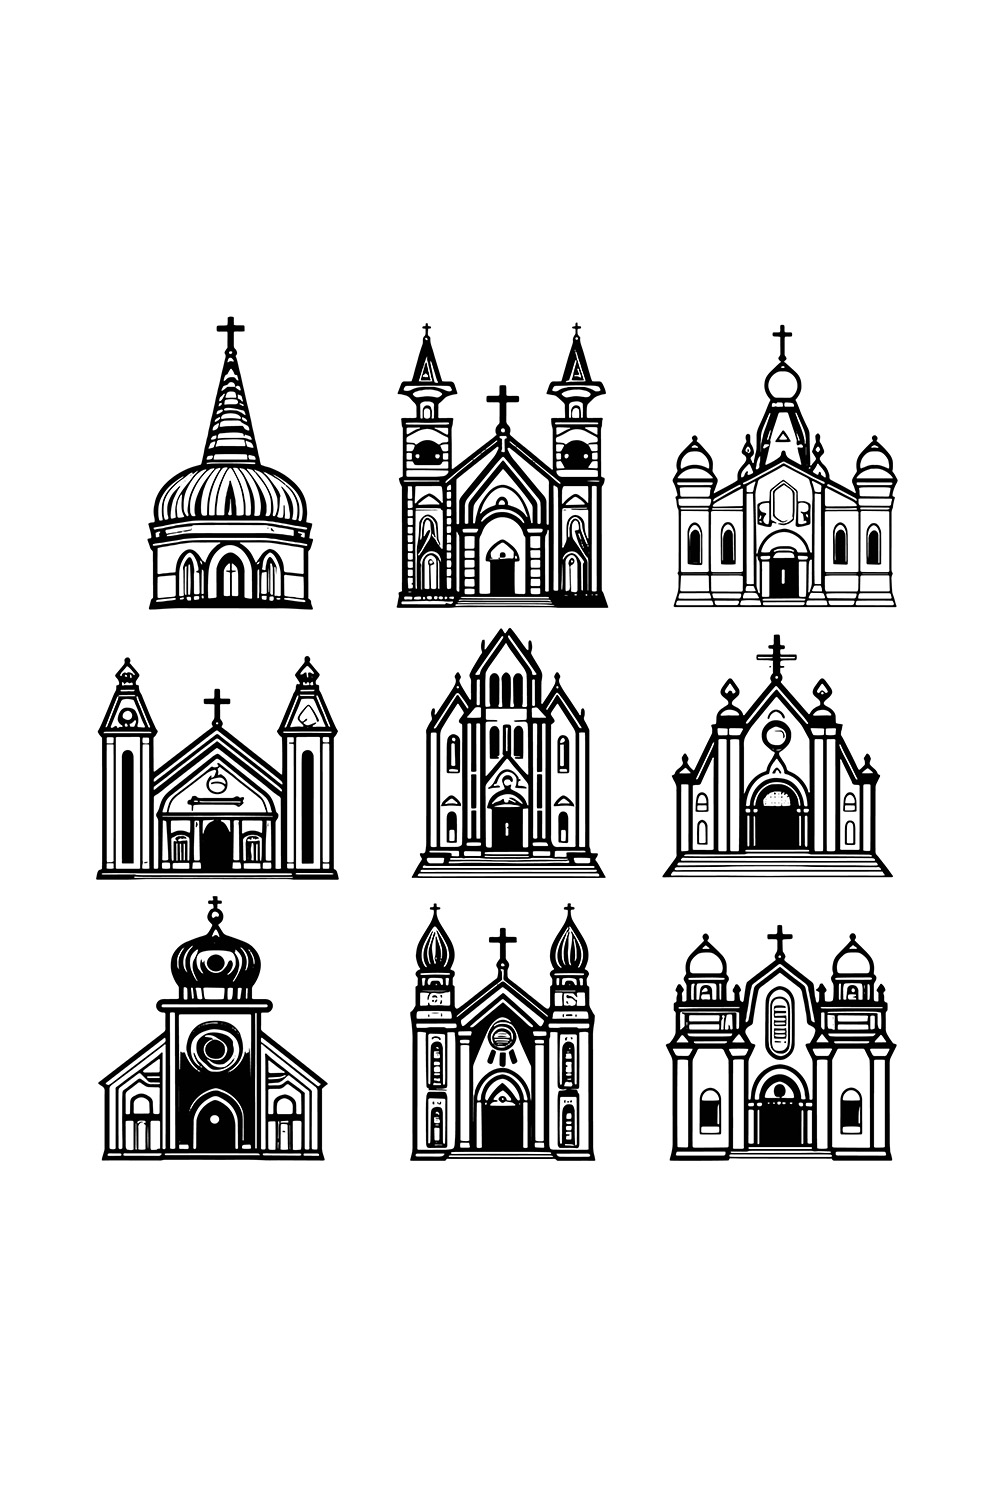 9 Church Icons Bundle Set Illustration pinterest preview image.